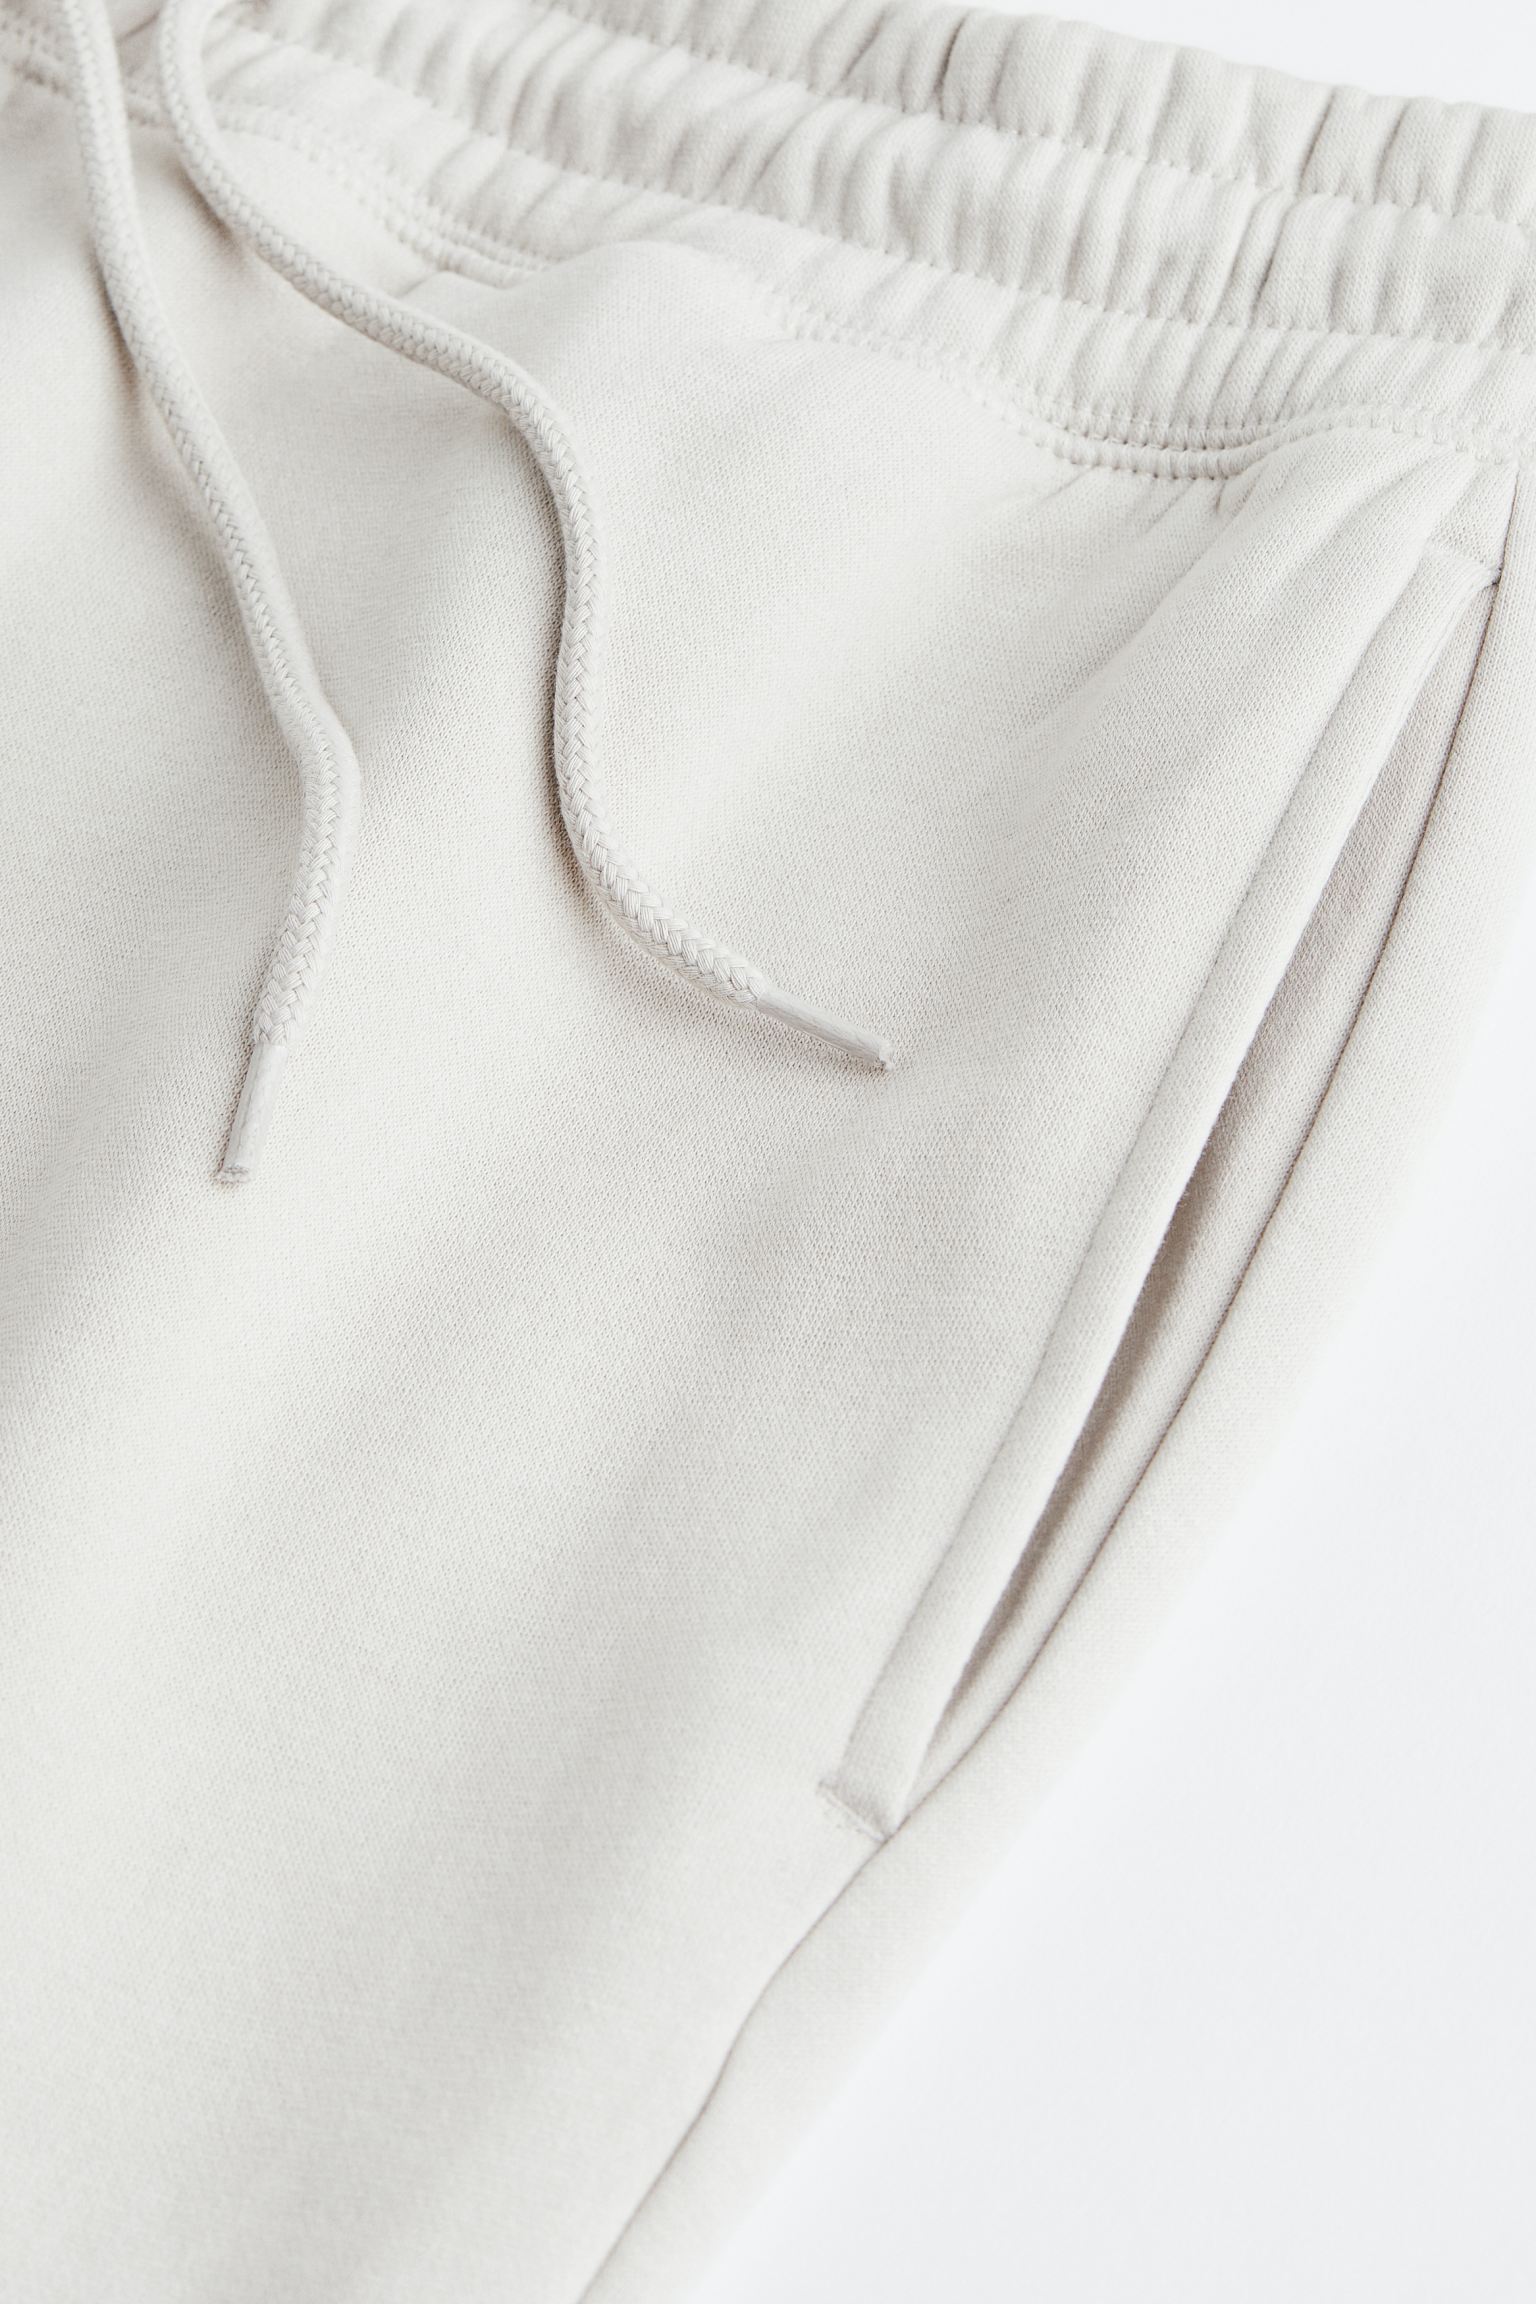 에이치앤엠 H&M 2-piece Relaxed Fit Sweatshirt Set